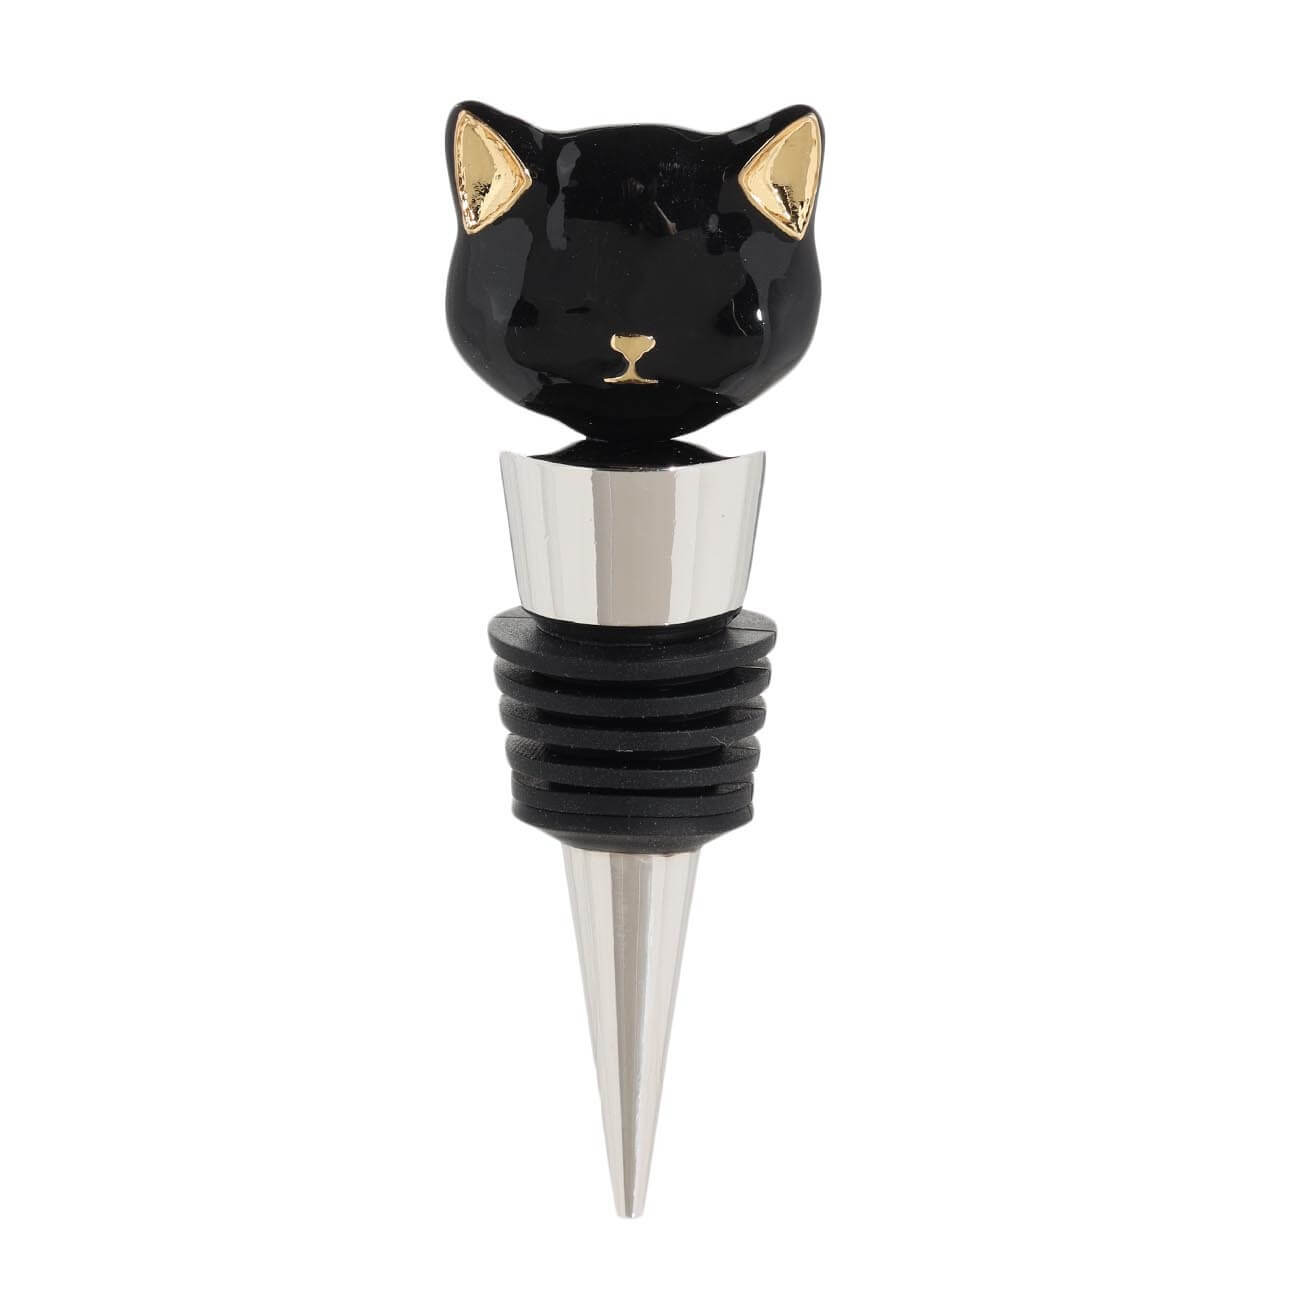 Пробка для винной бутылки, 10 см, металл/стекло, черная, Кот, Cat night изображение № 1